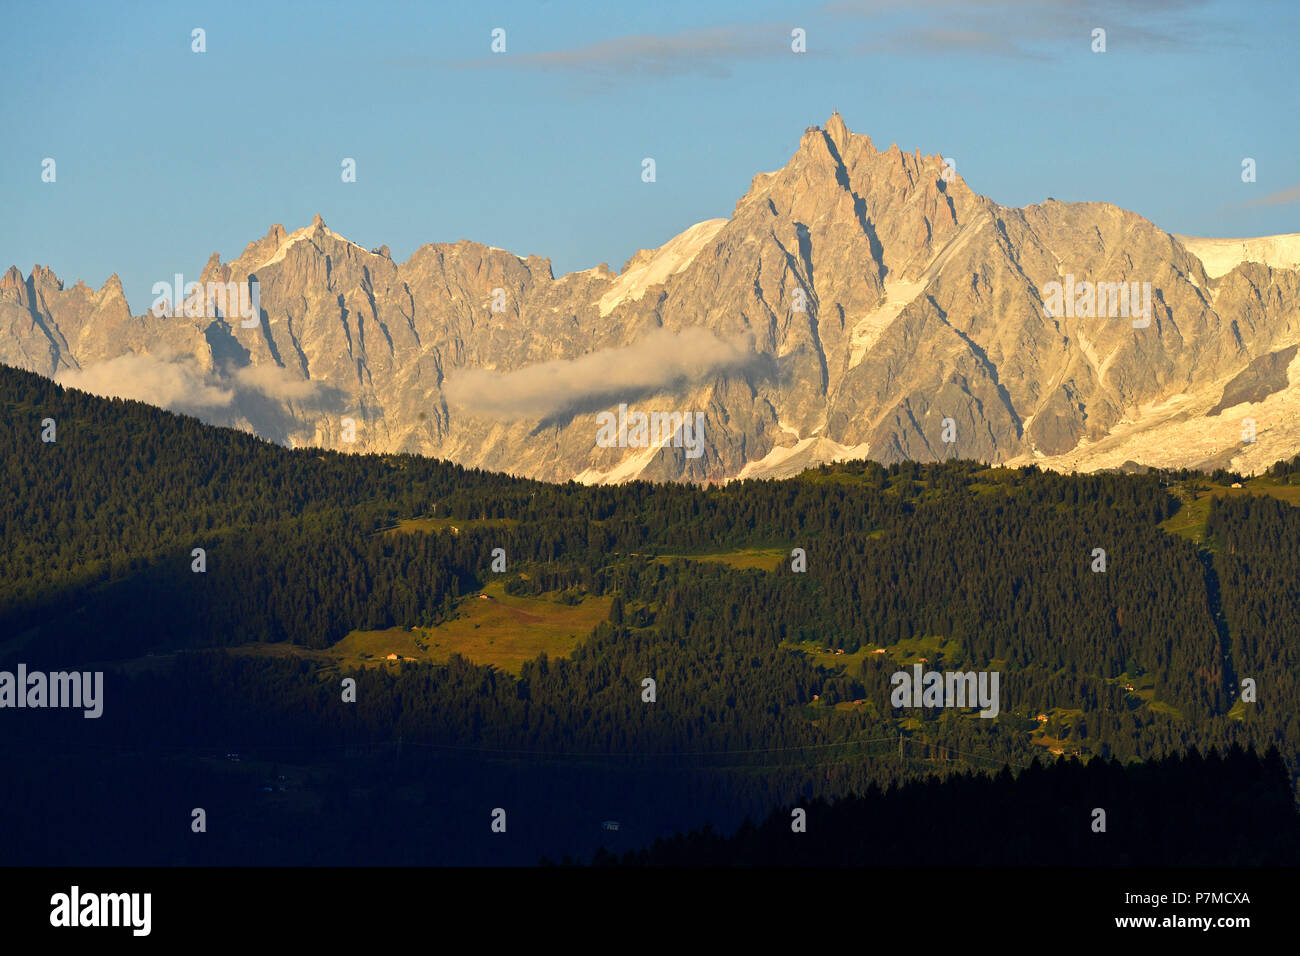 France, Haute Savoie, Chamonix Mont Blanc, Aiguille du Midi (3848m) Stock Photo